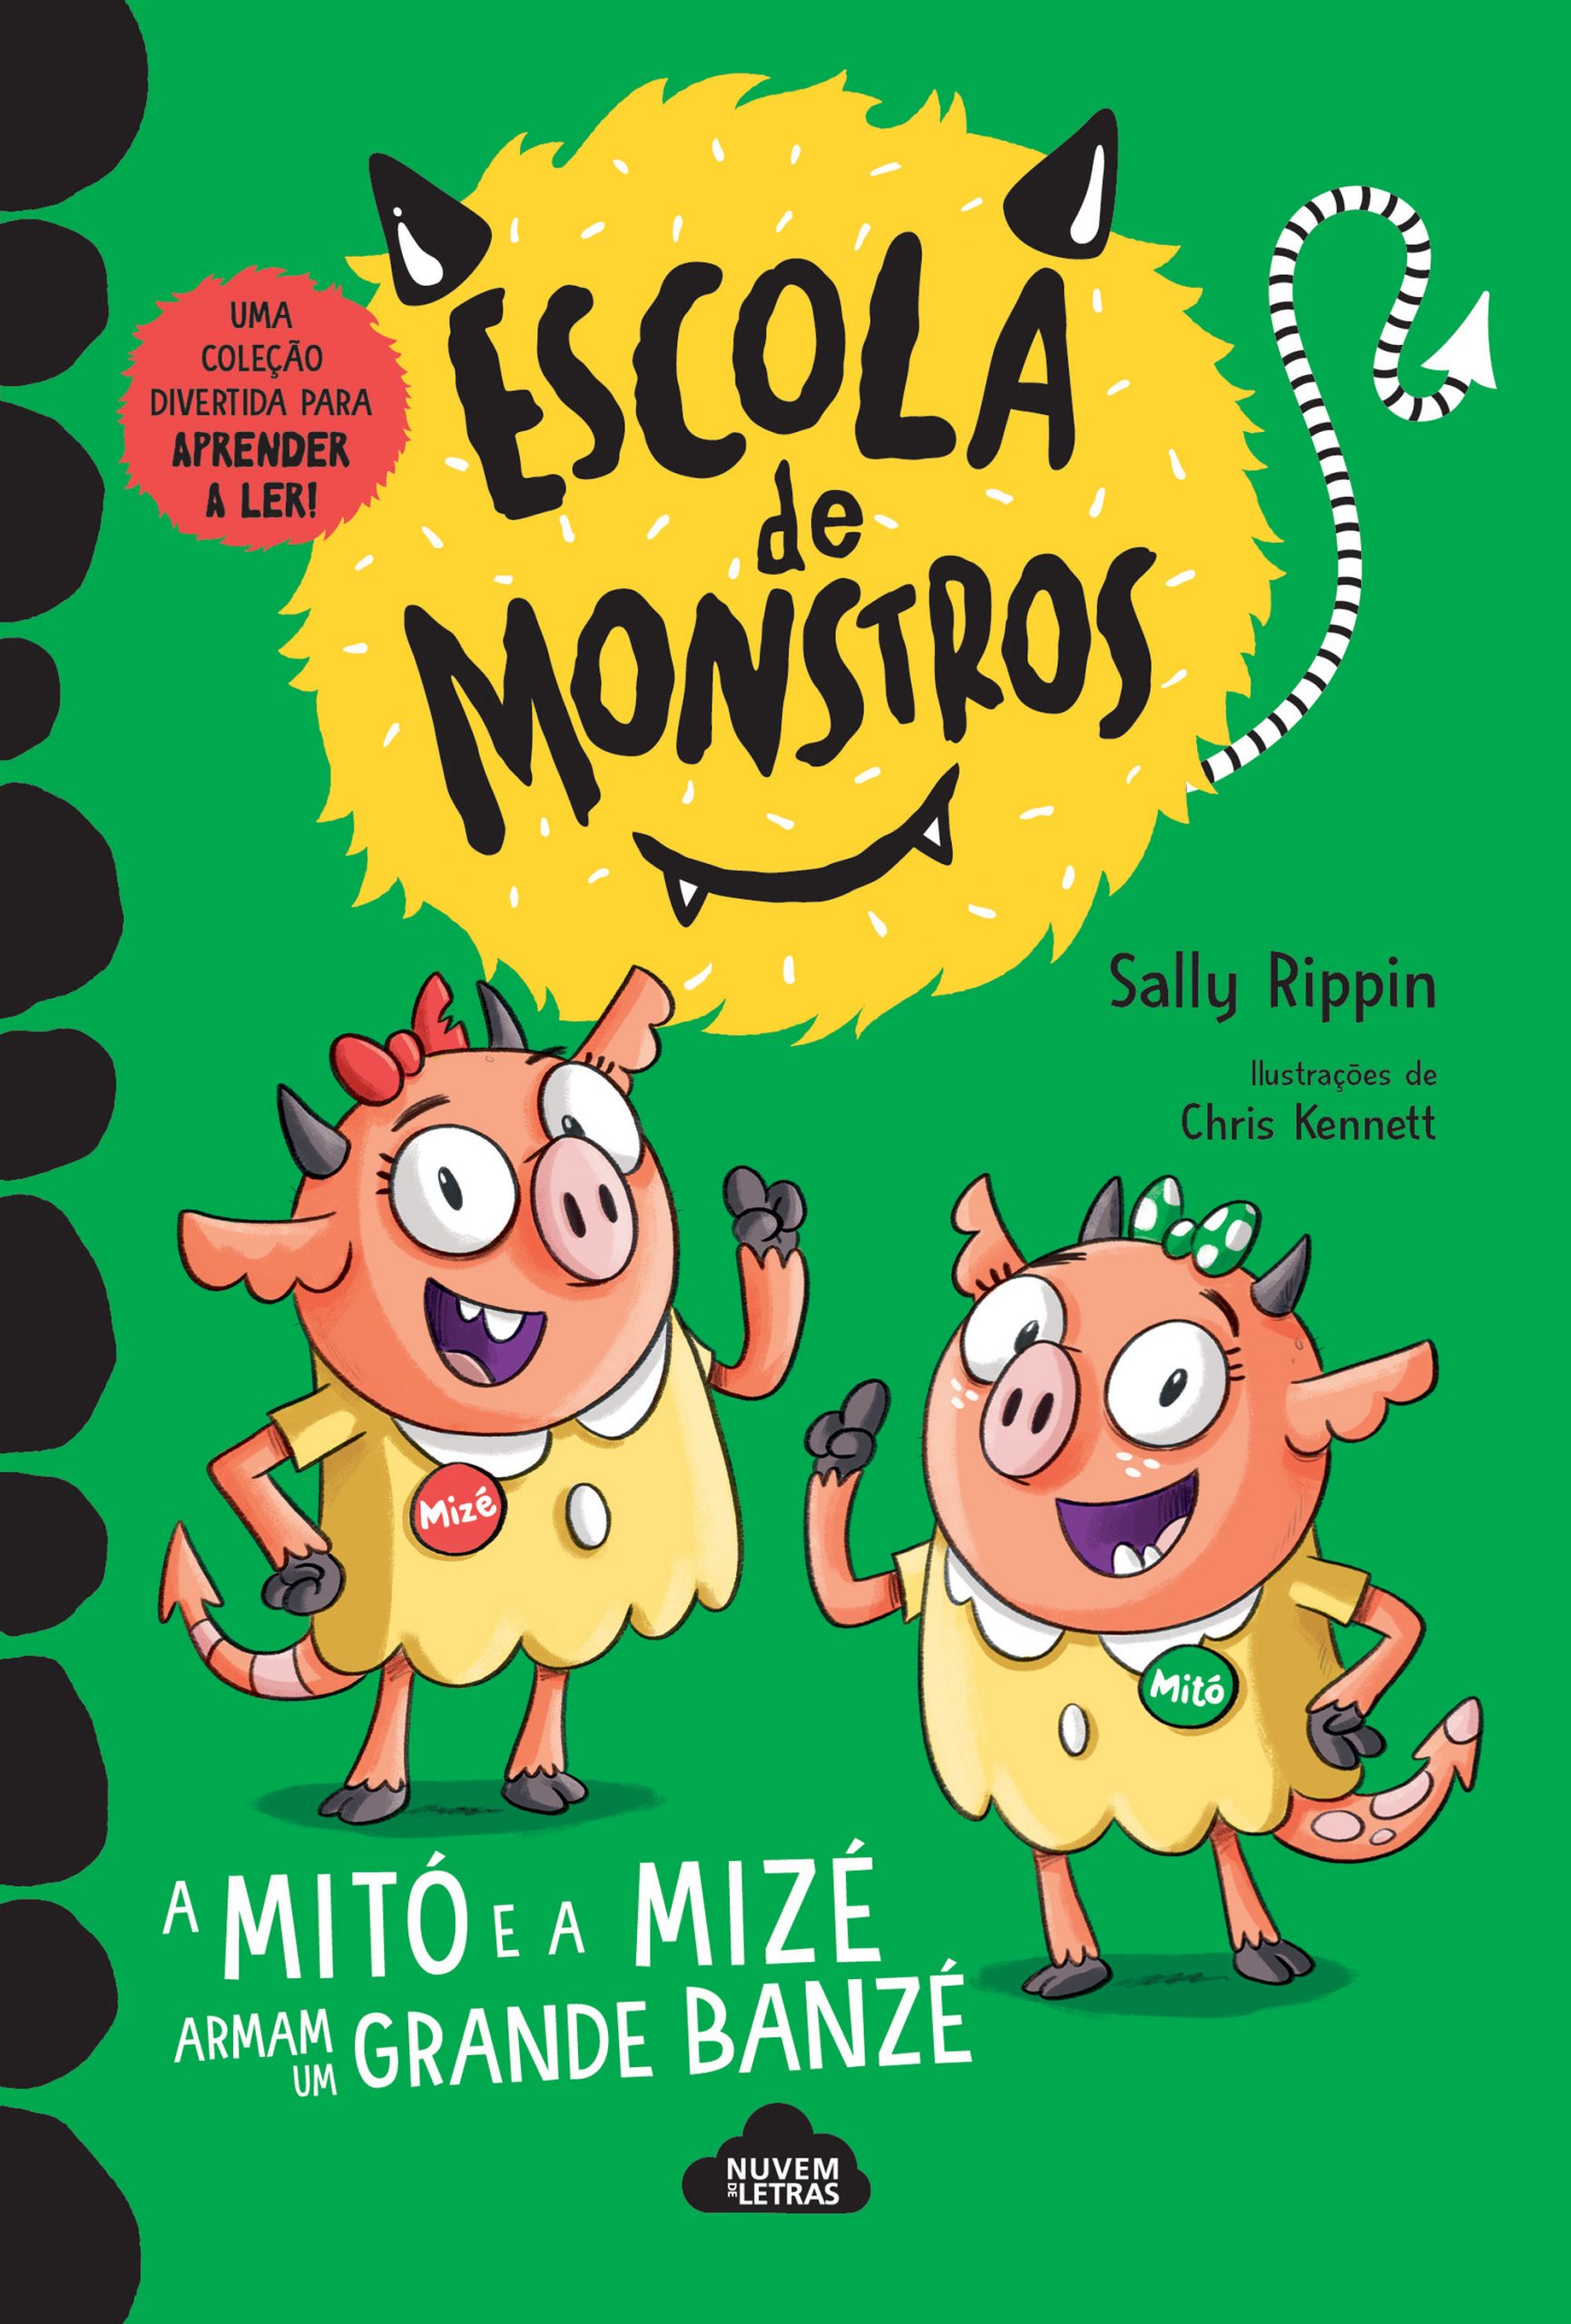 Monkey Owmen Xxxsex - Escola de Monstros - Penguin Livros